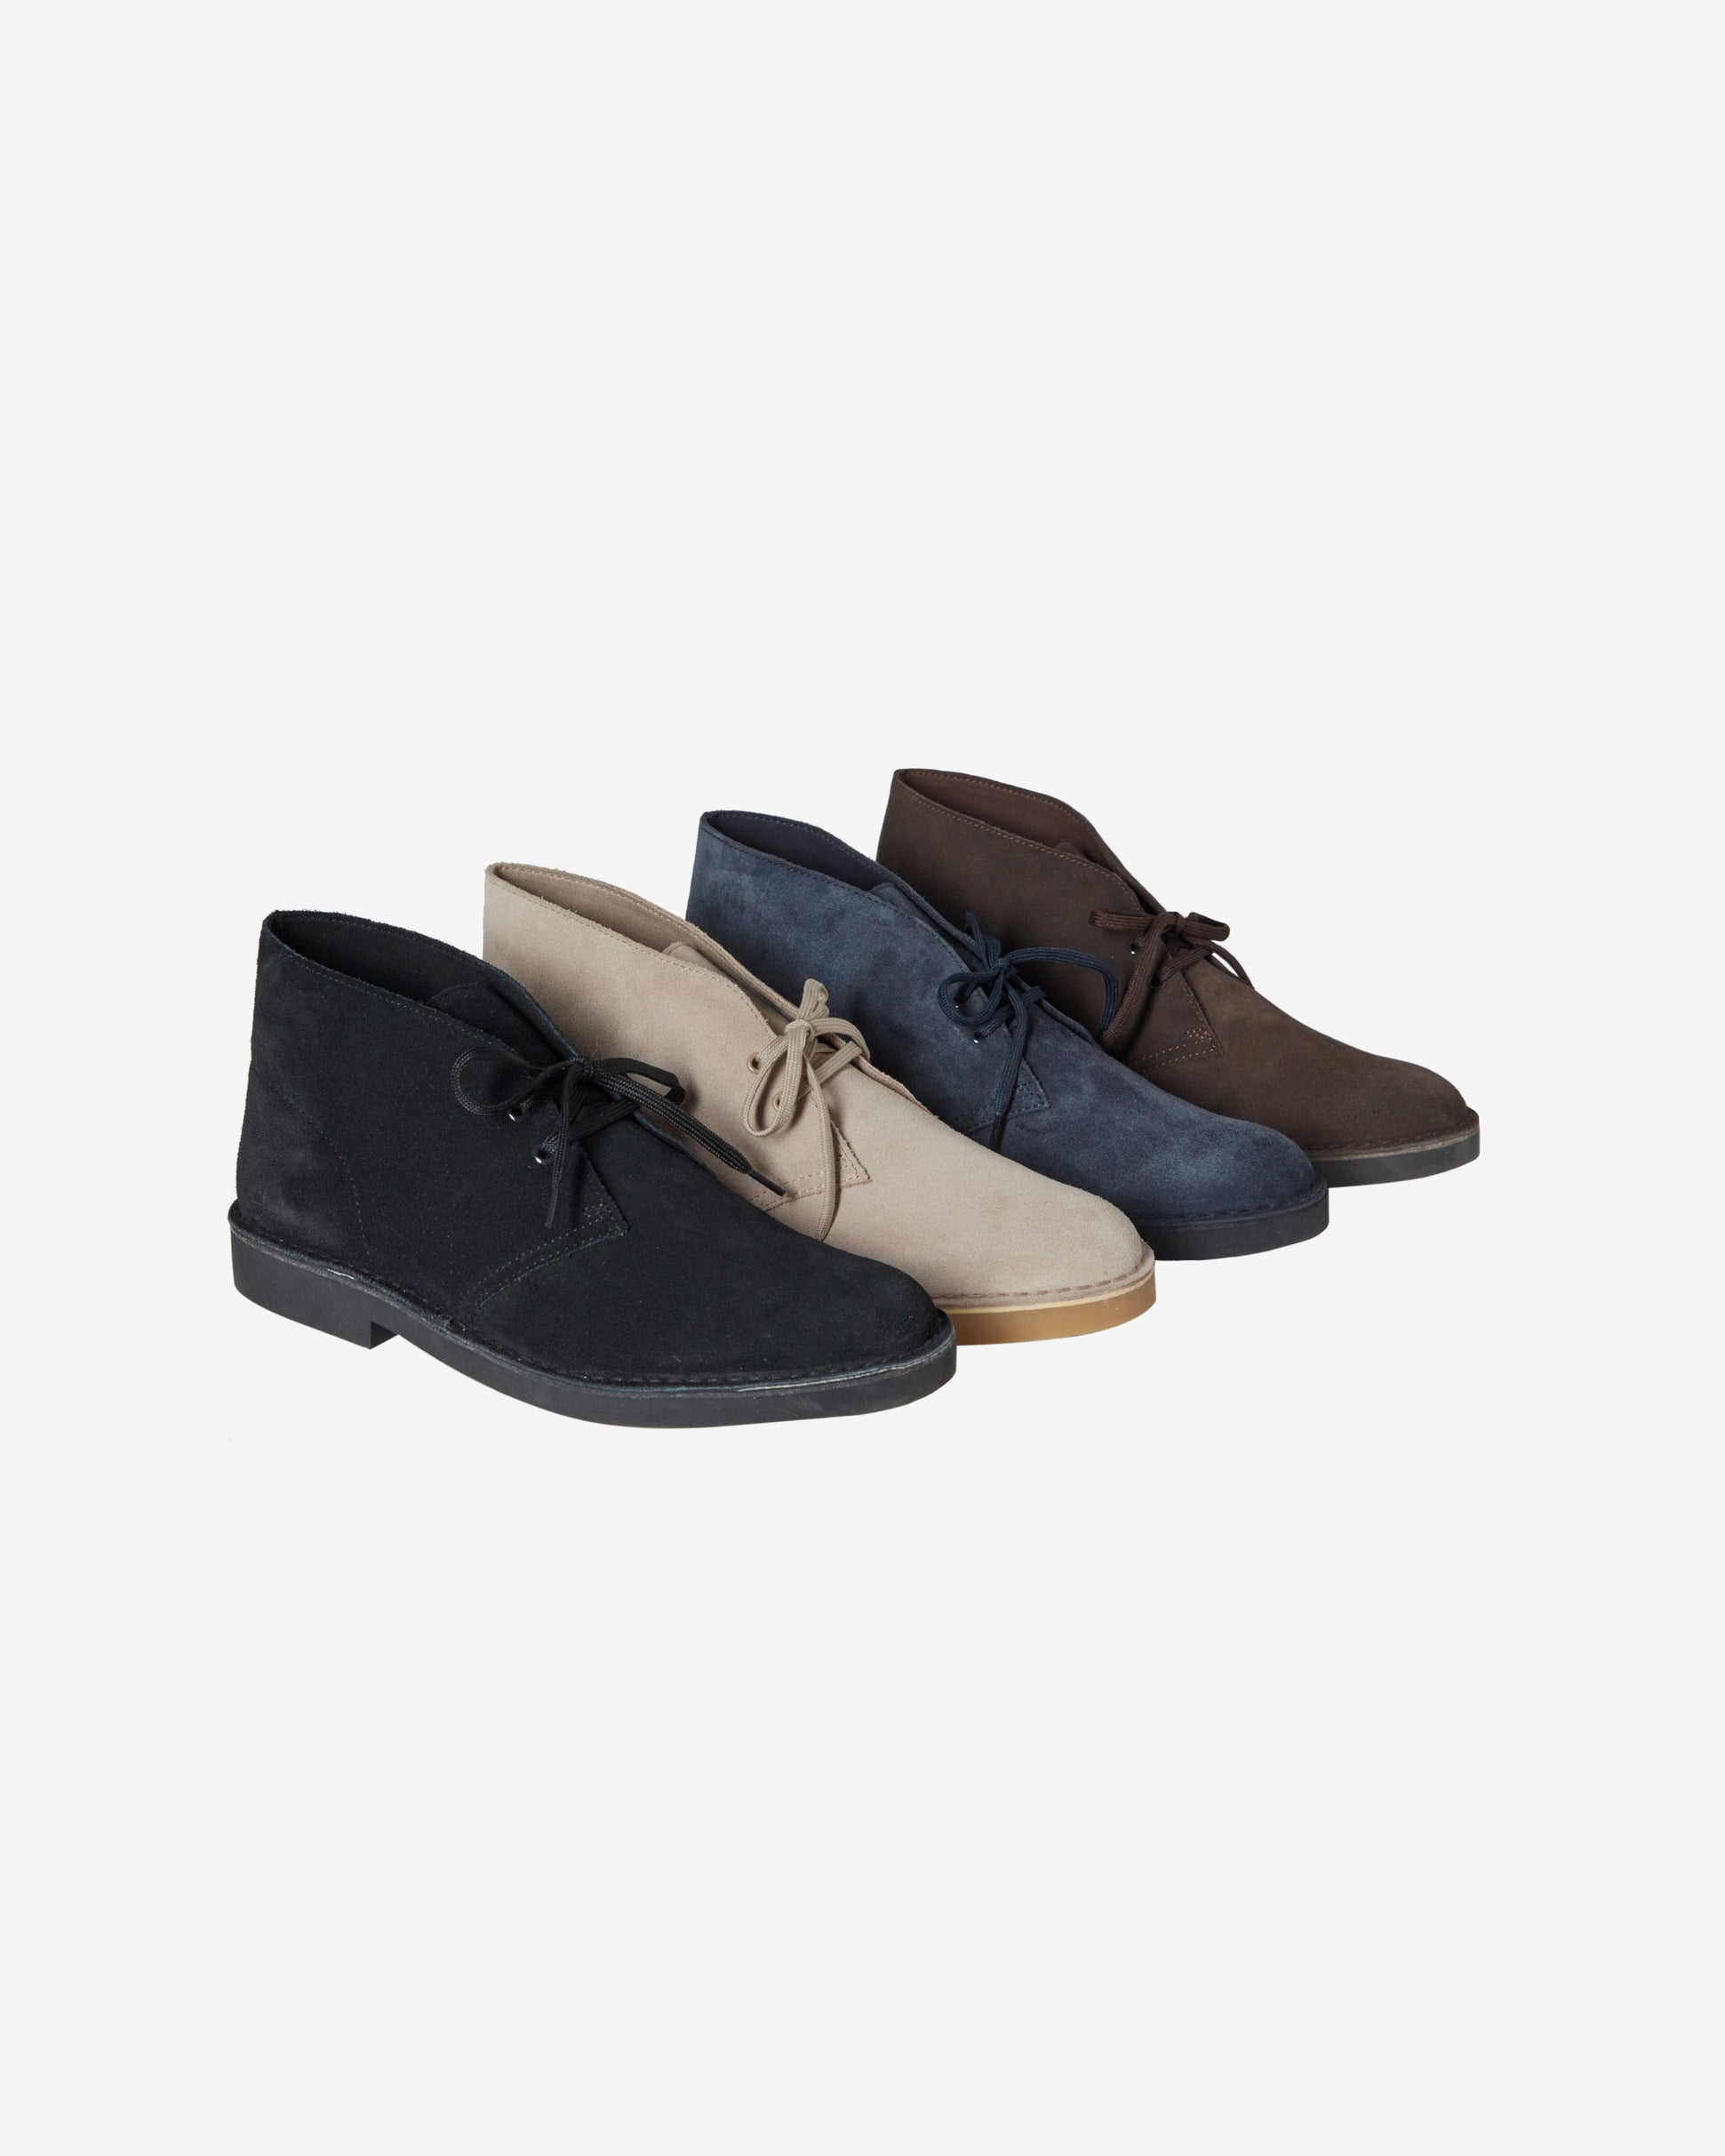 CLARK'S DESERT BOOT Shoes - Navy